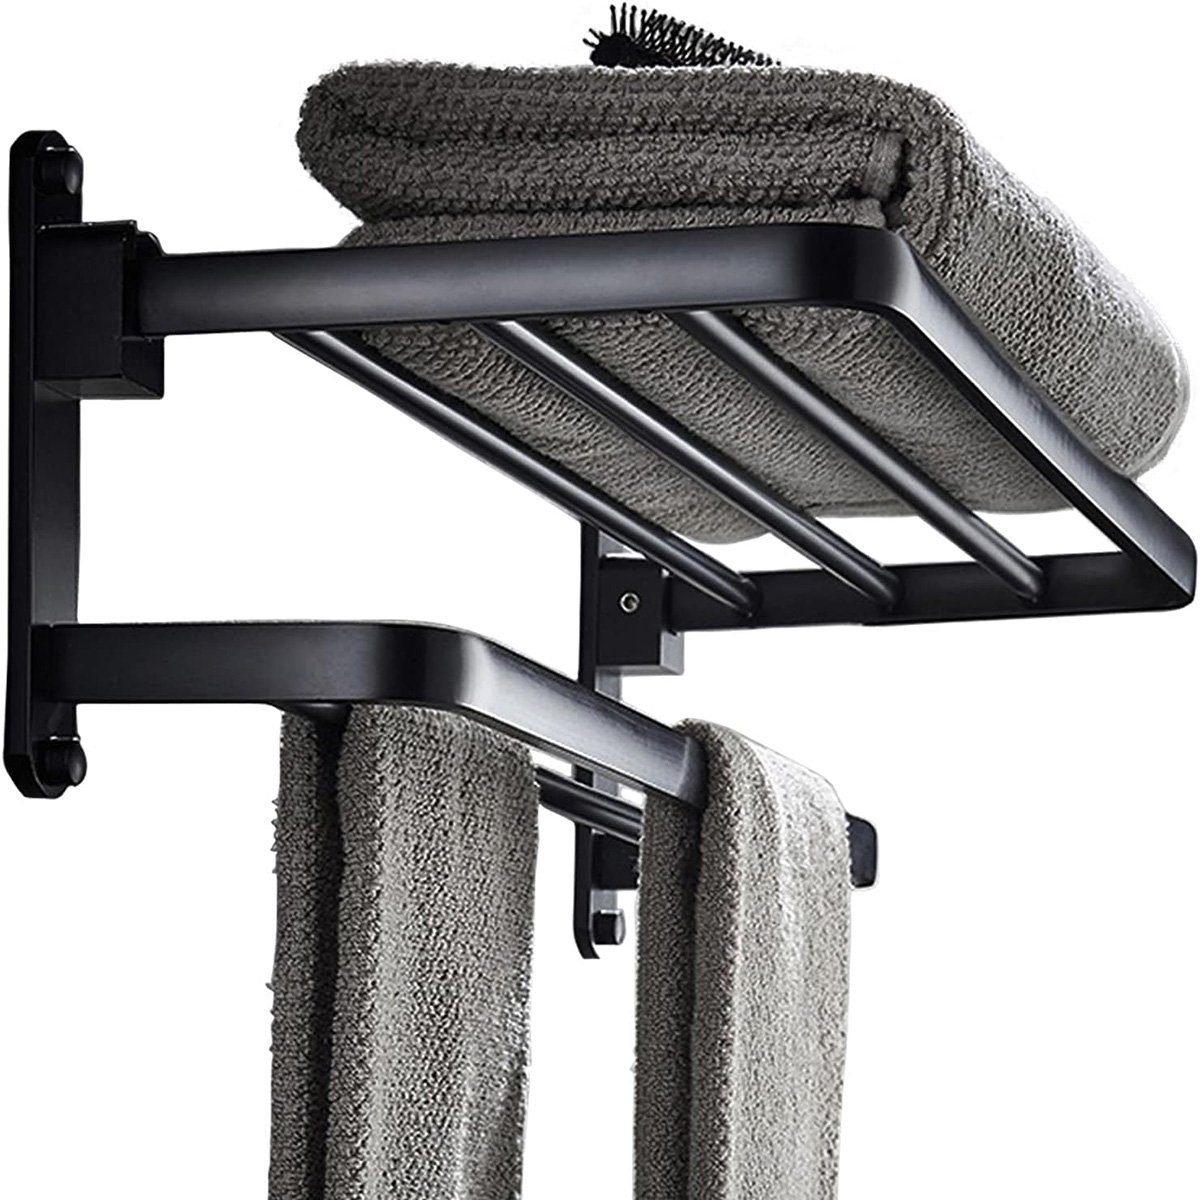 götäzer Handtuchhalter 40 cm großer Handtuchhalter für das Badezimmer, Mit doppeltem Handtuchhalter und Haken, mattschwarz | Handtuchstangen